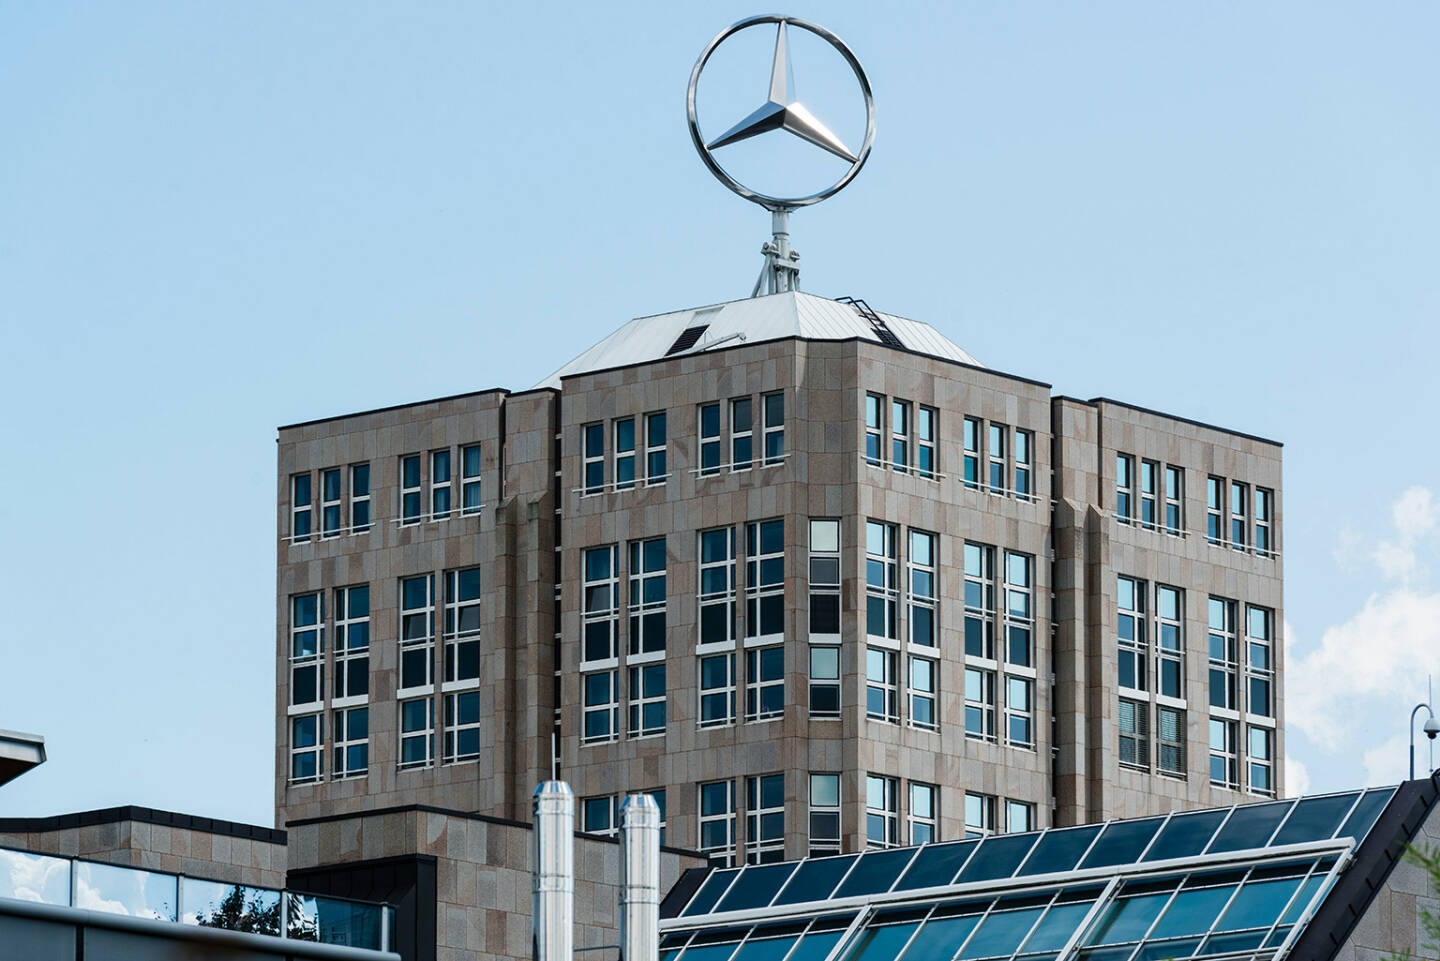 Daimler Headquarter, Mercedes, Stern, Stuttgart <a href=http://www.shutterstock.com/gallery-501652p1.html?cr=00&pl=edit-00>Frank Gaertner</a> / <a href=http://www.shutterstock.com/editorial?cr=00&pl=edit-00>Shutterstock.com</a>